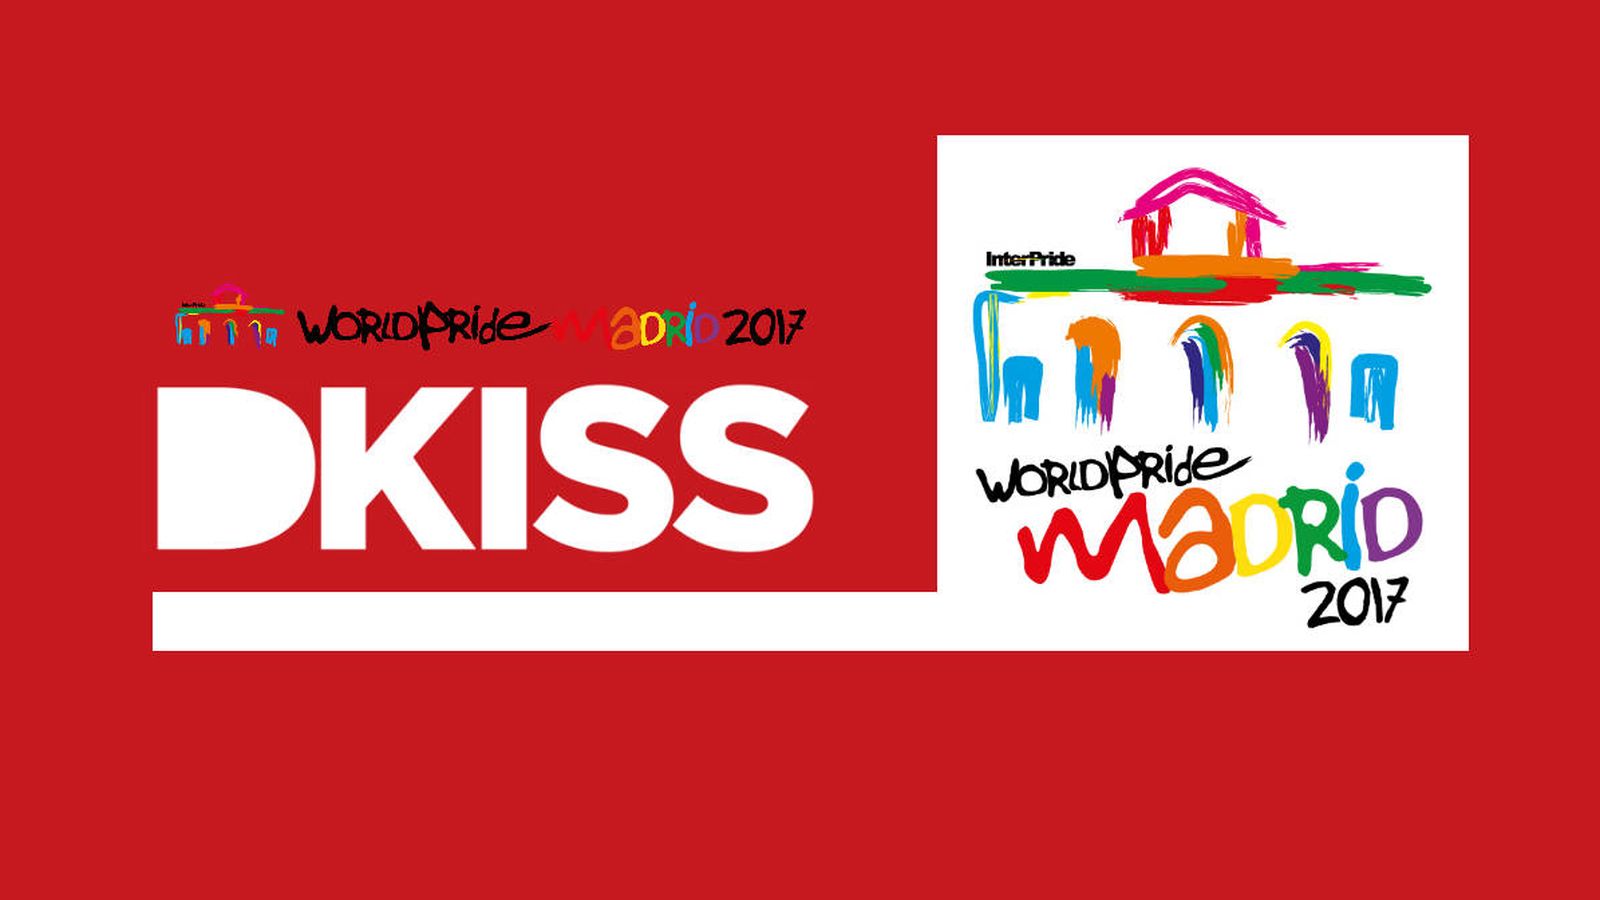 Foto: Dkiss, patrocinador del World Pride Madrid.